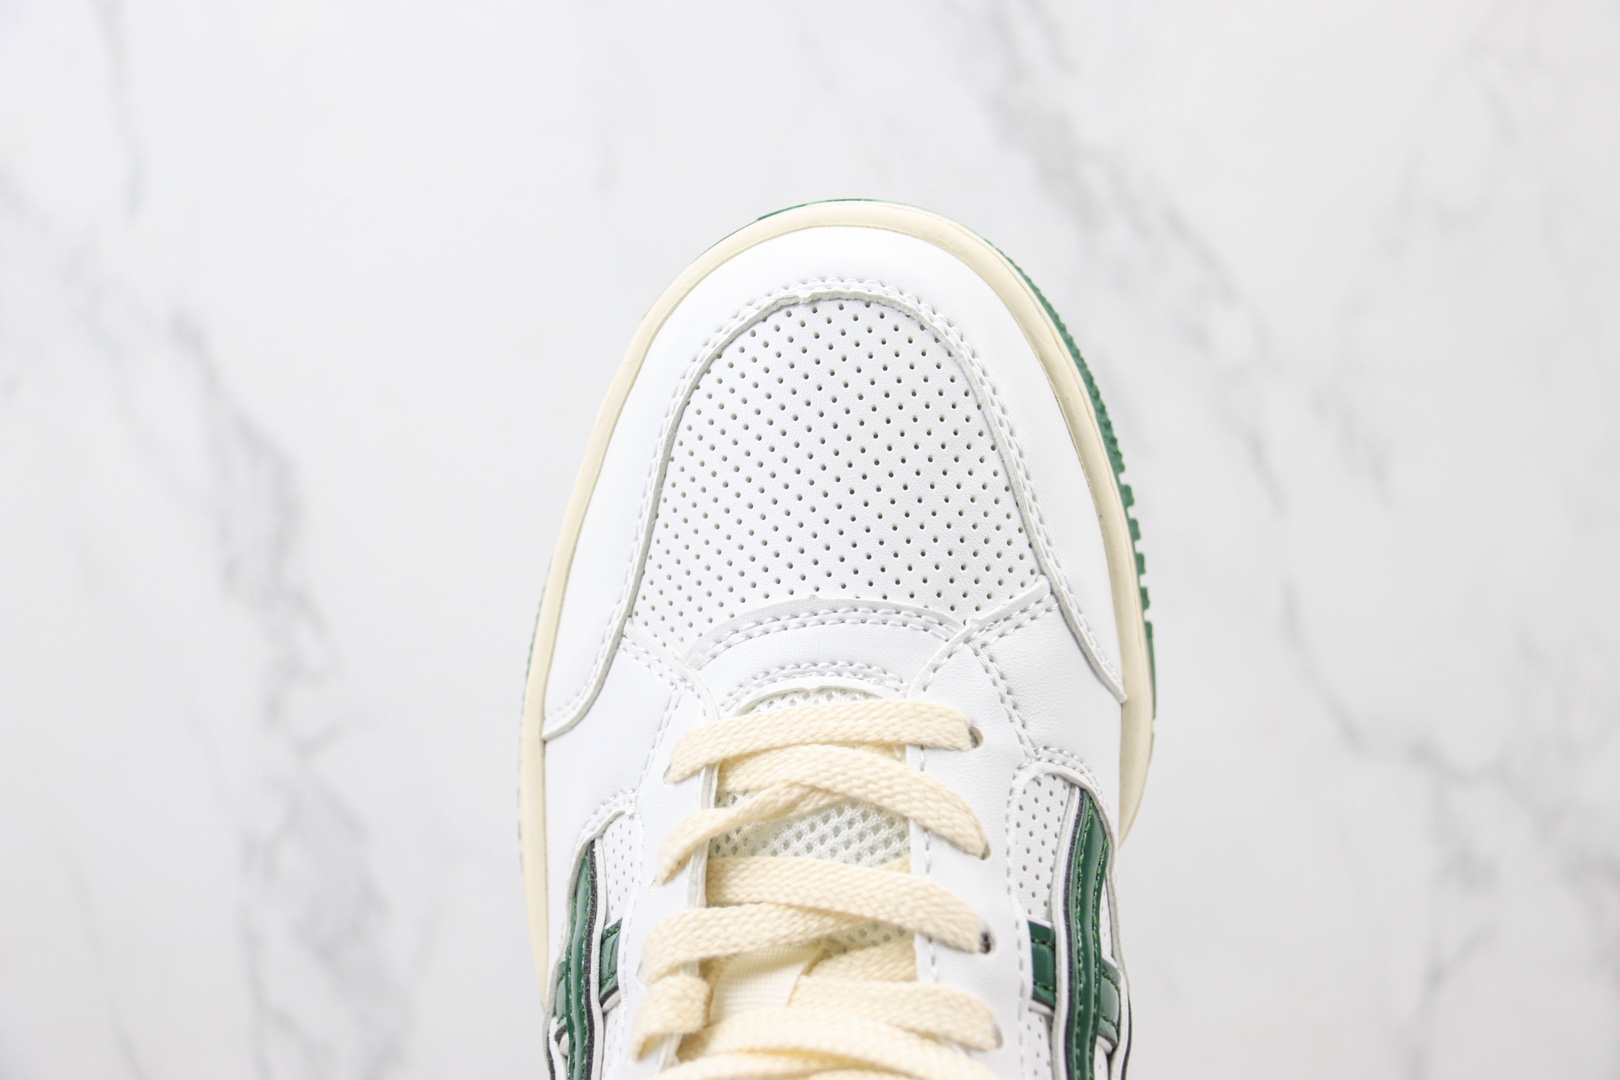 亚瑟士Asics Gel-Spotlyte Low纯原版本莱特系列白绿复古篮球鞋 莆田复刻鞋货源 货号：1203A397-102